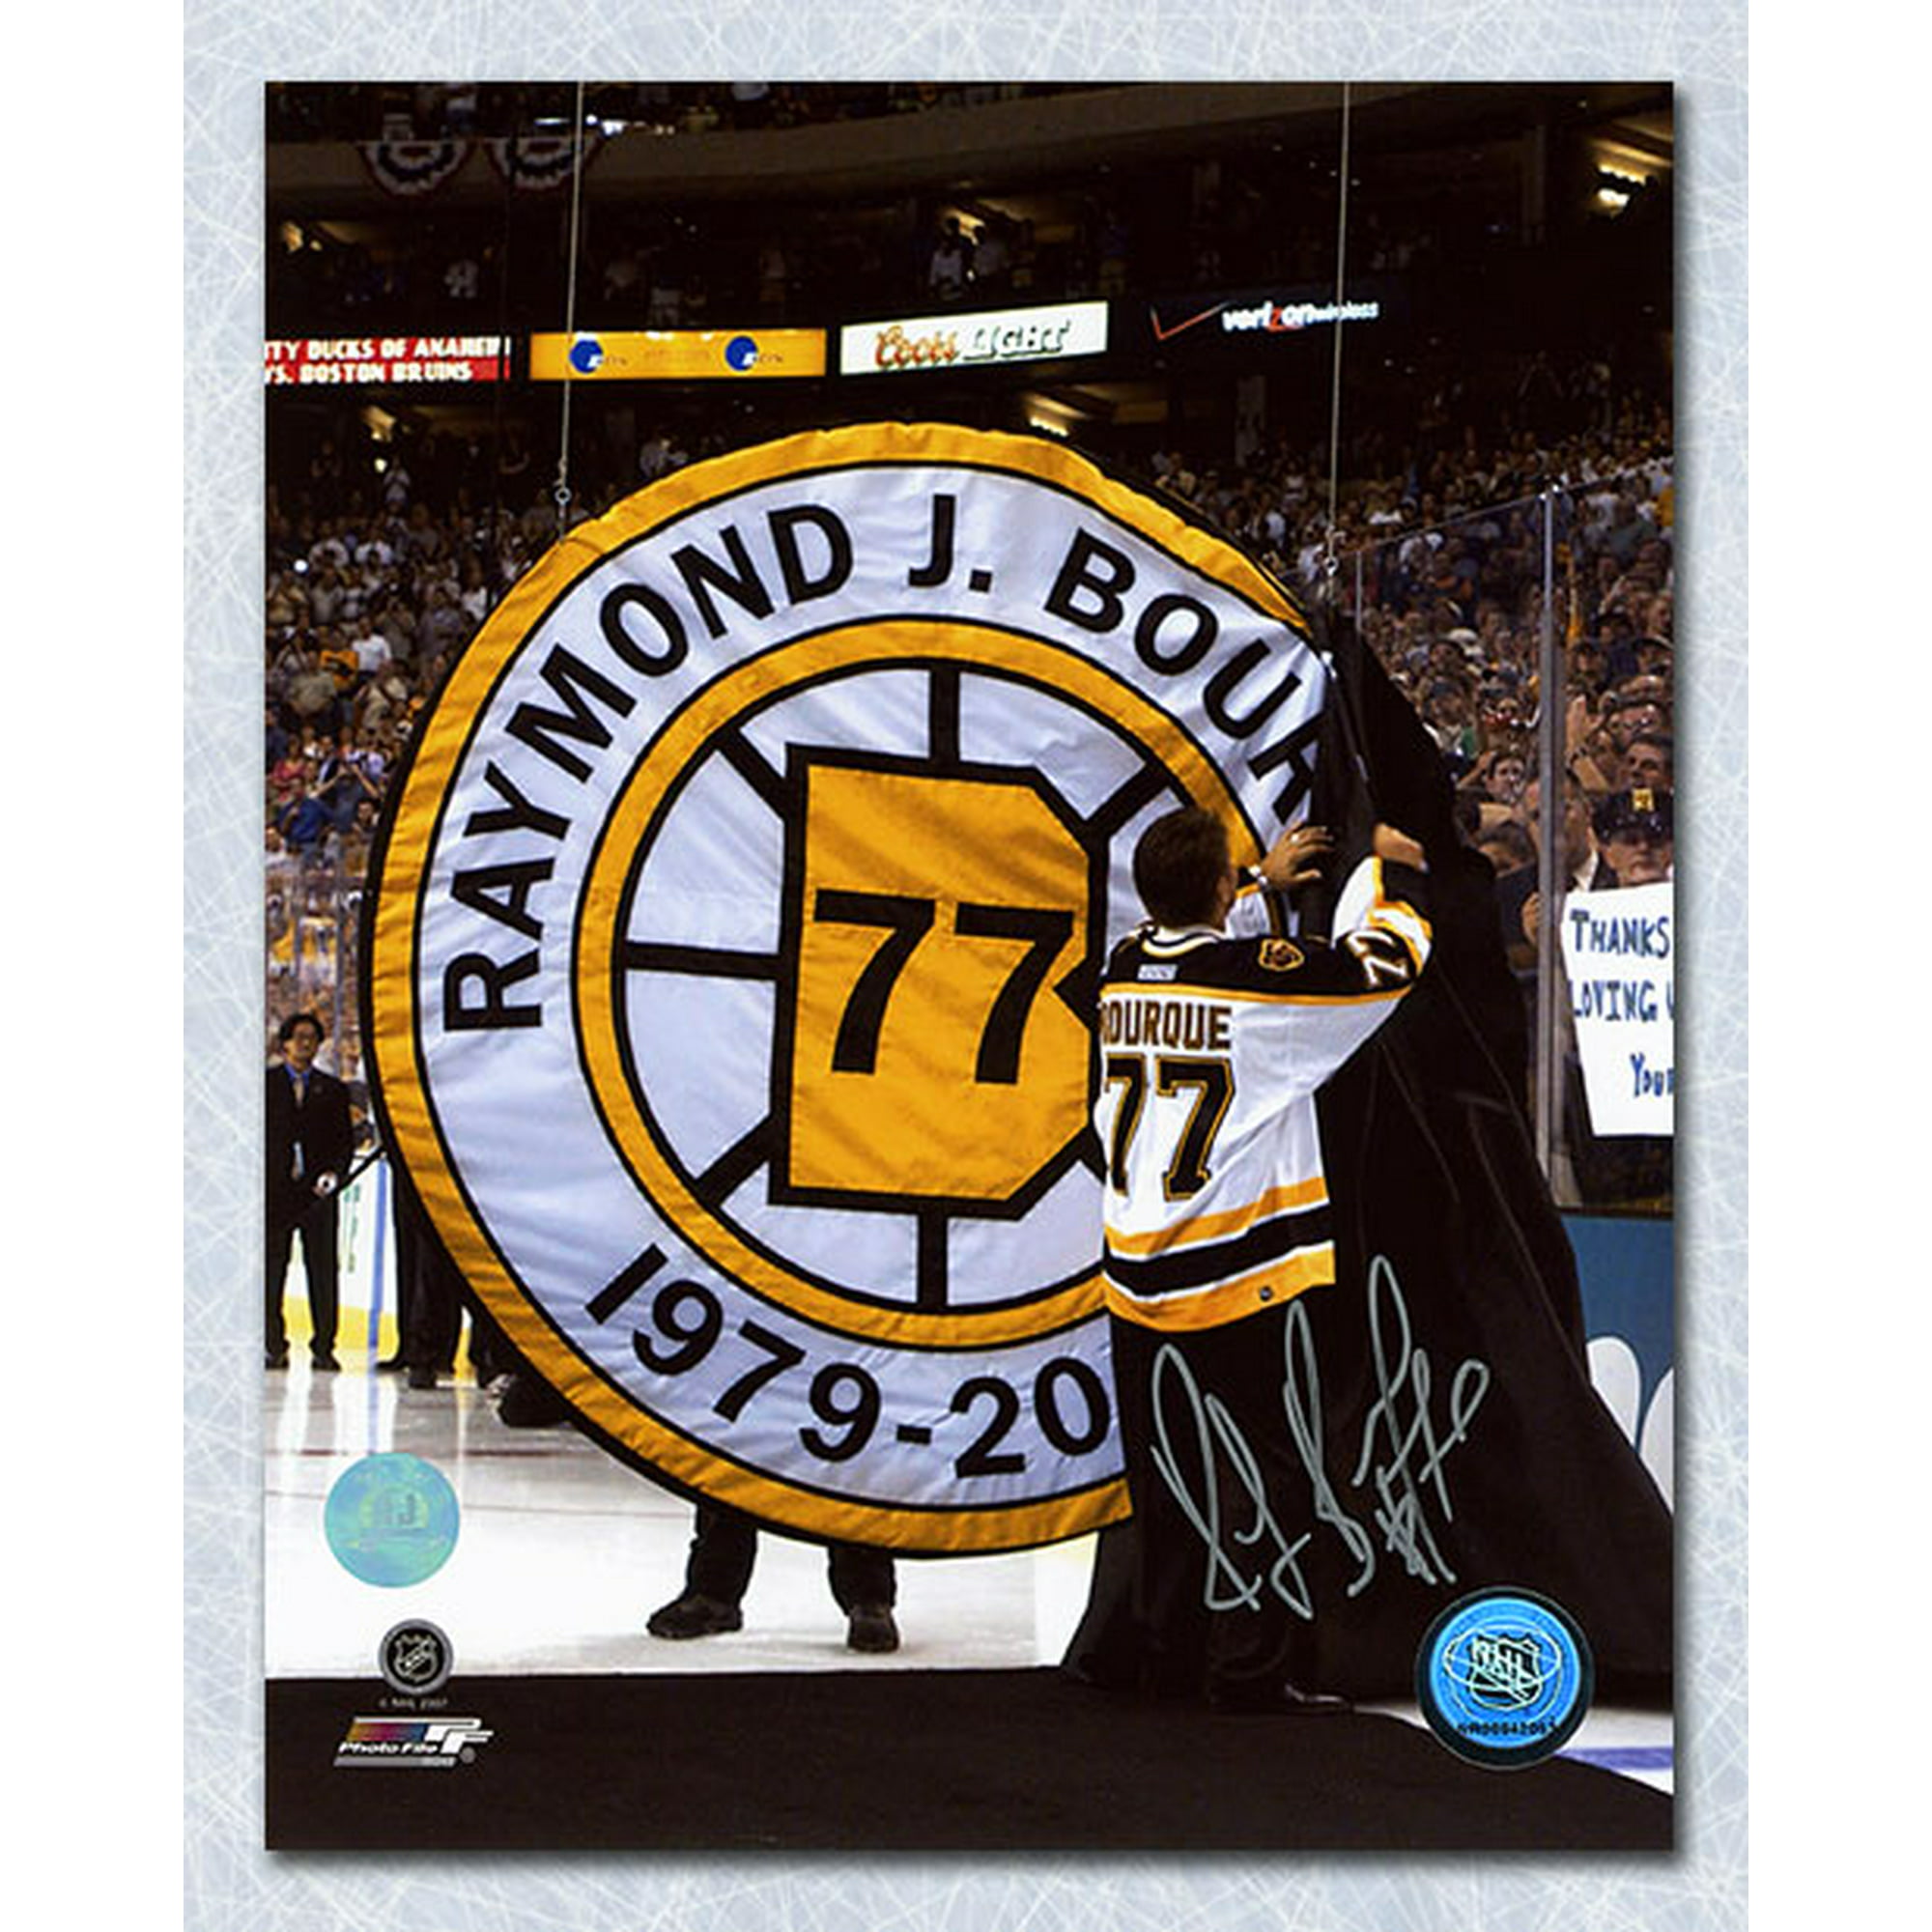 Bruins retire Ray Bourque's No. 77